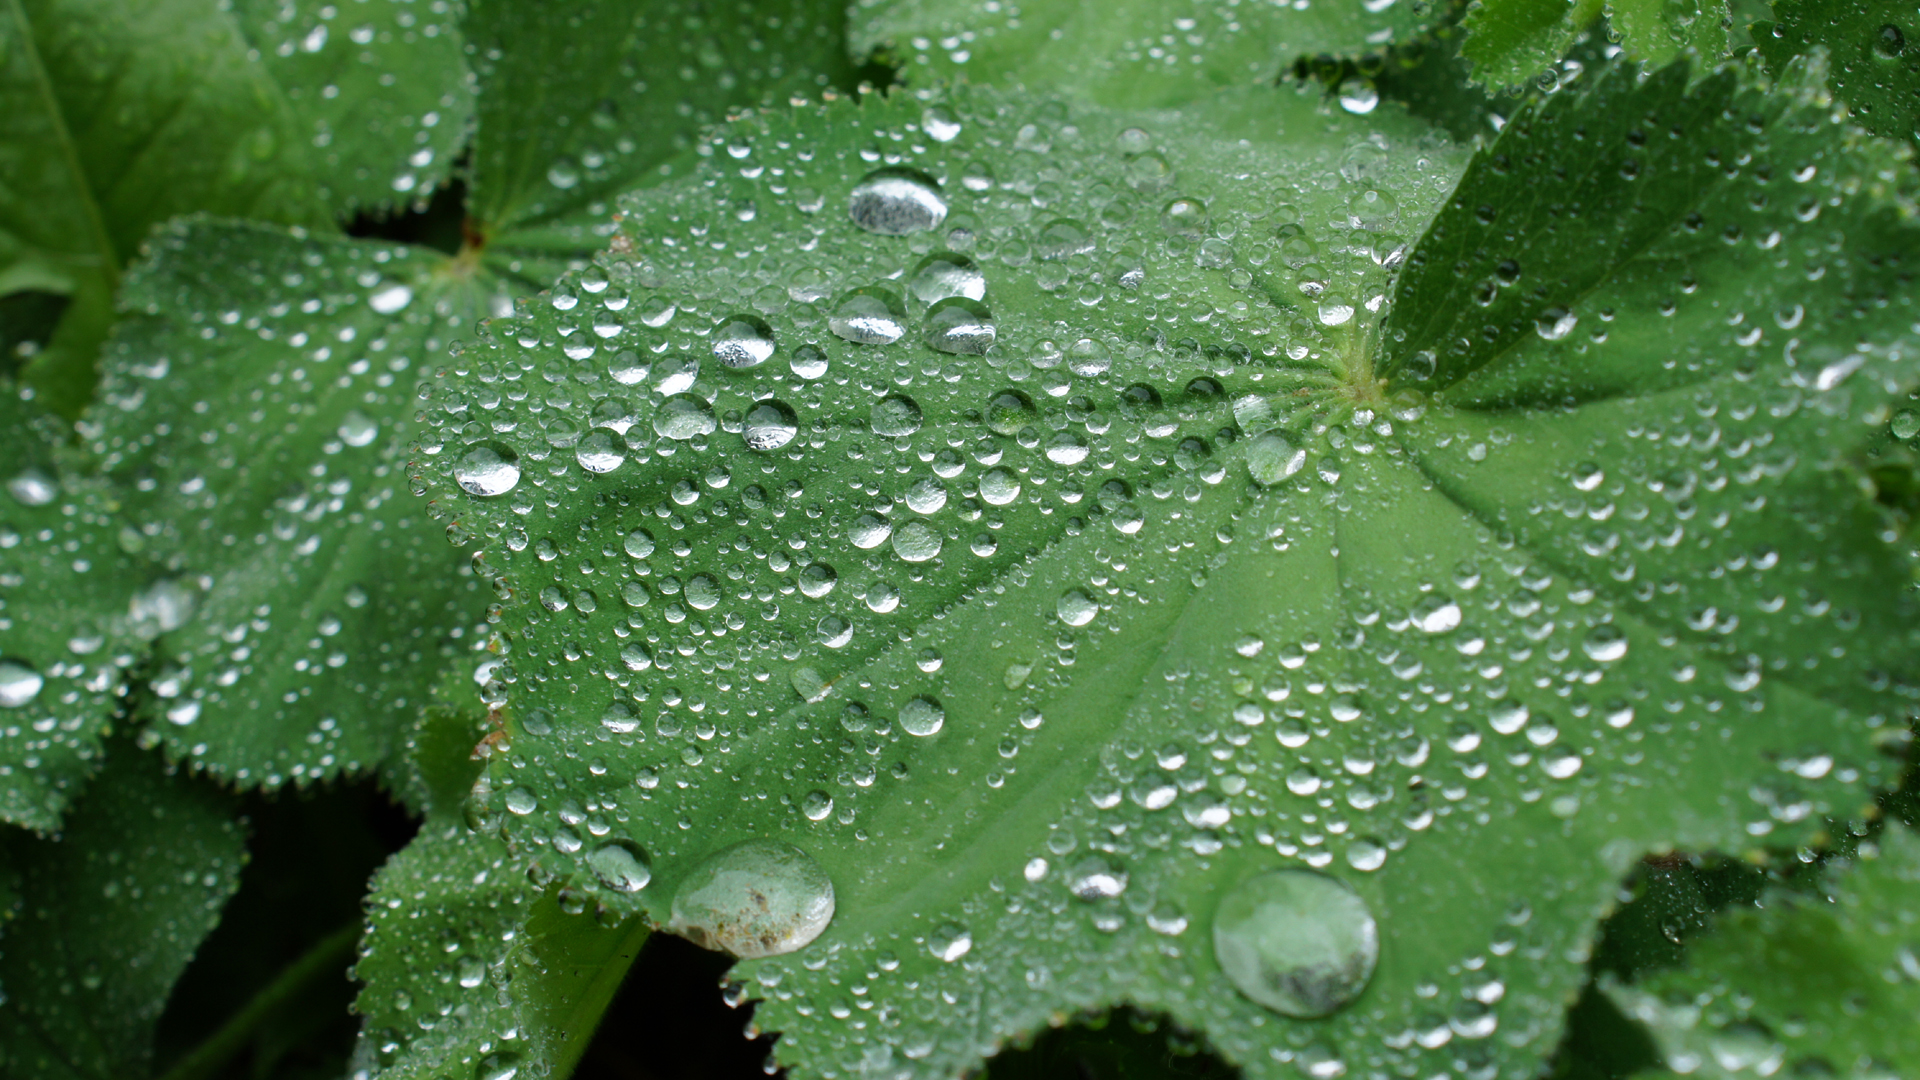 Fotostrecke Wasser 04: Regentropfen auf Blättern